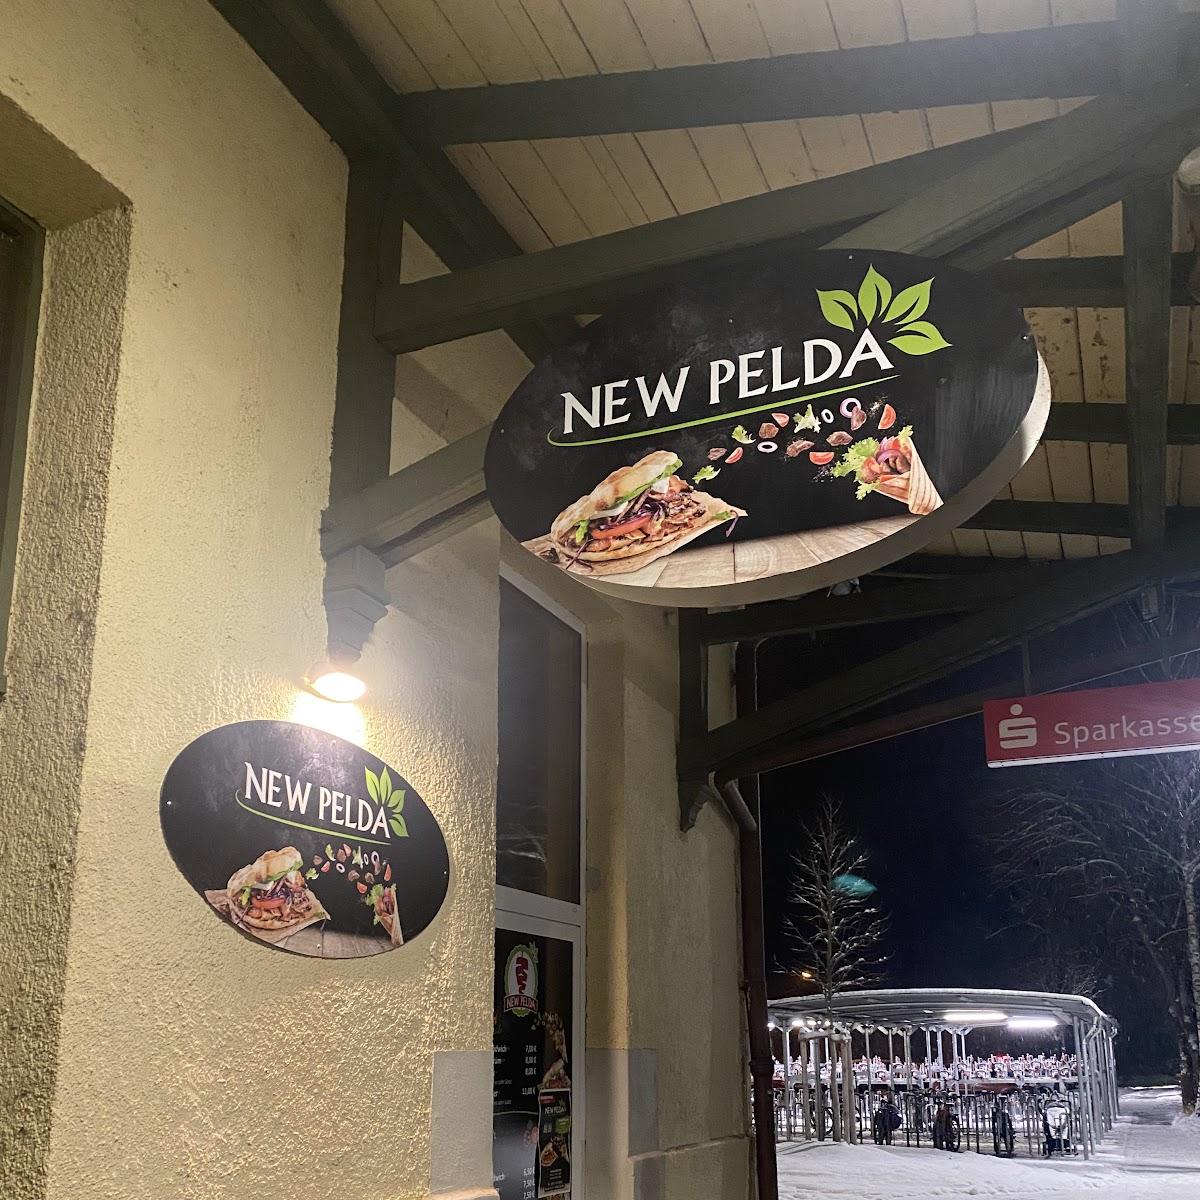 Restaurant "NEW PELDA" in Dorfen